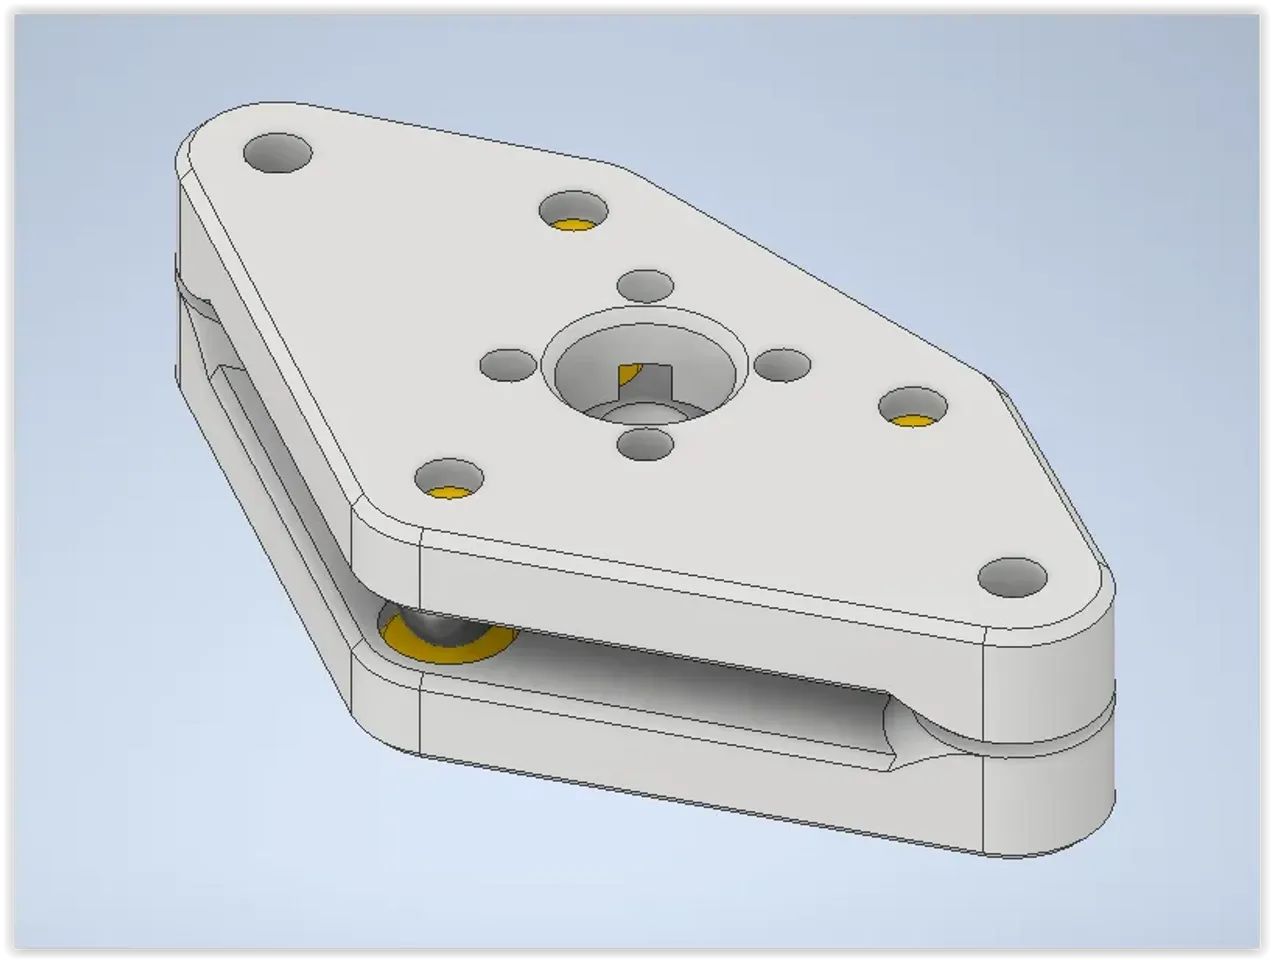 Artillery Sidewinder X1 3D Printer – 3D Makers Point